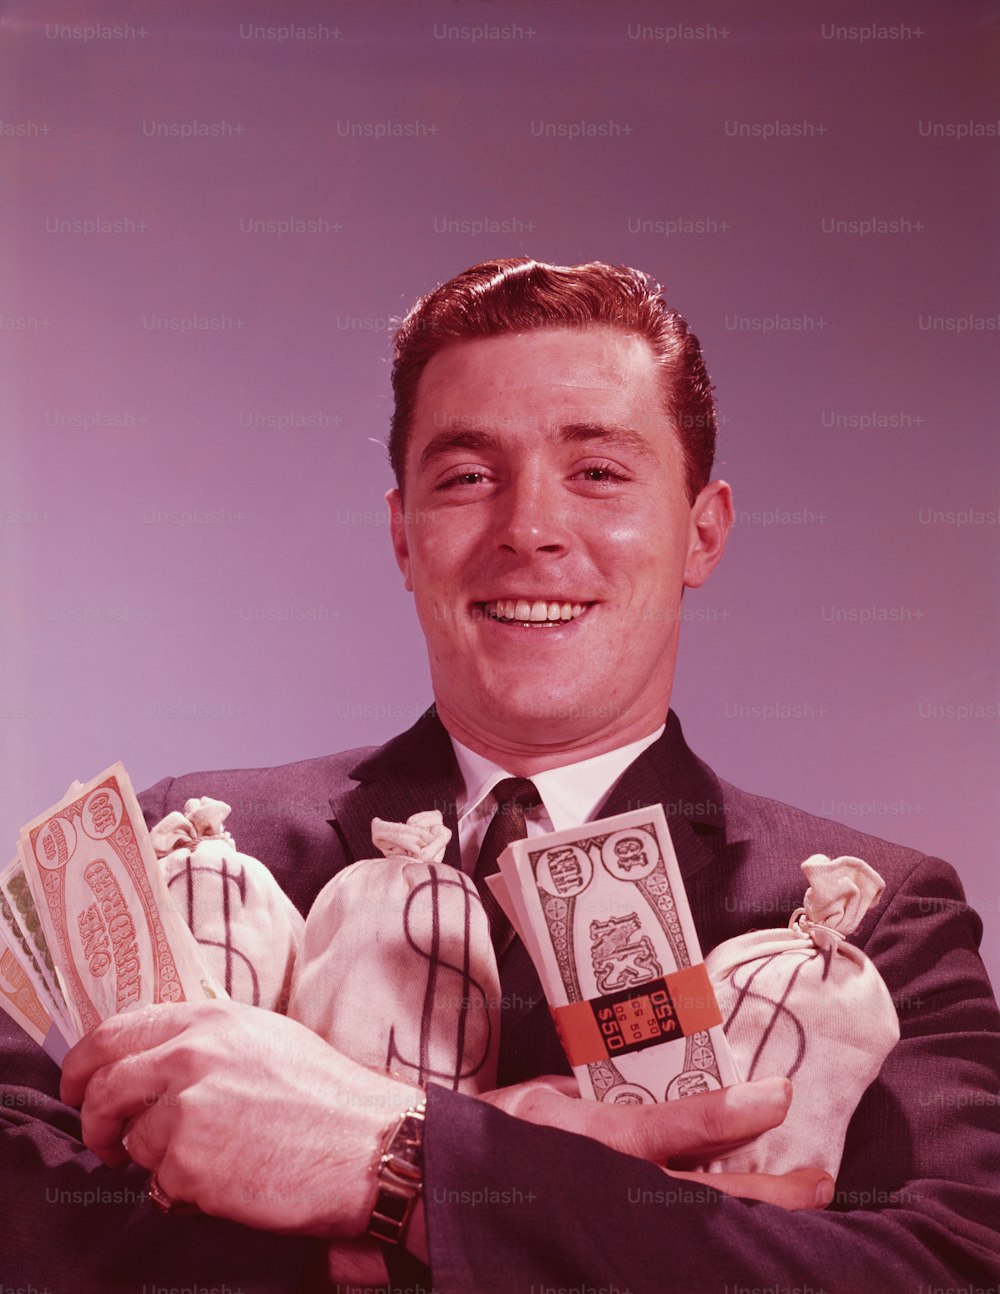 ÉTATS-UNIS - Circa 1960s : Homme tenant des liasses et des sacs d’argent, souriant, portrait.